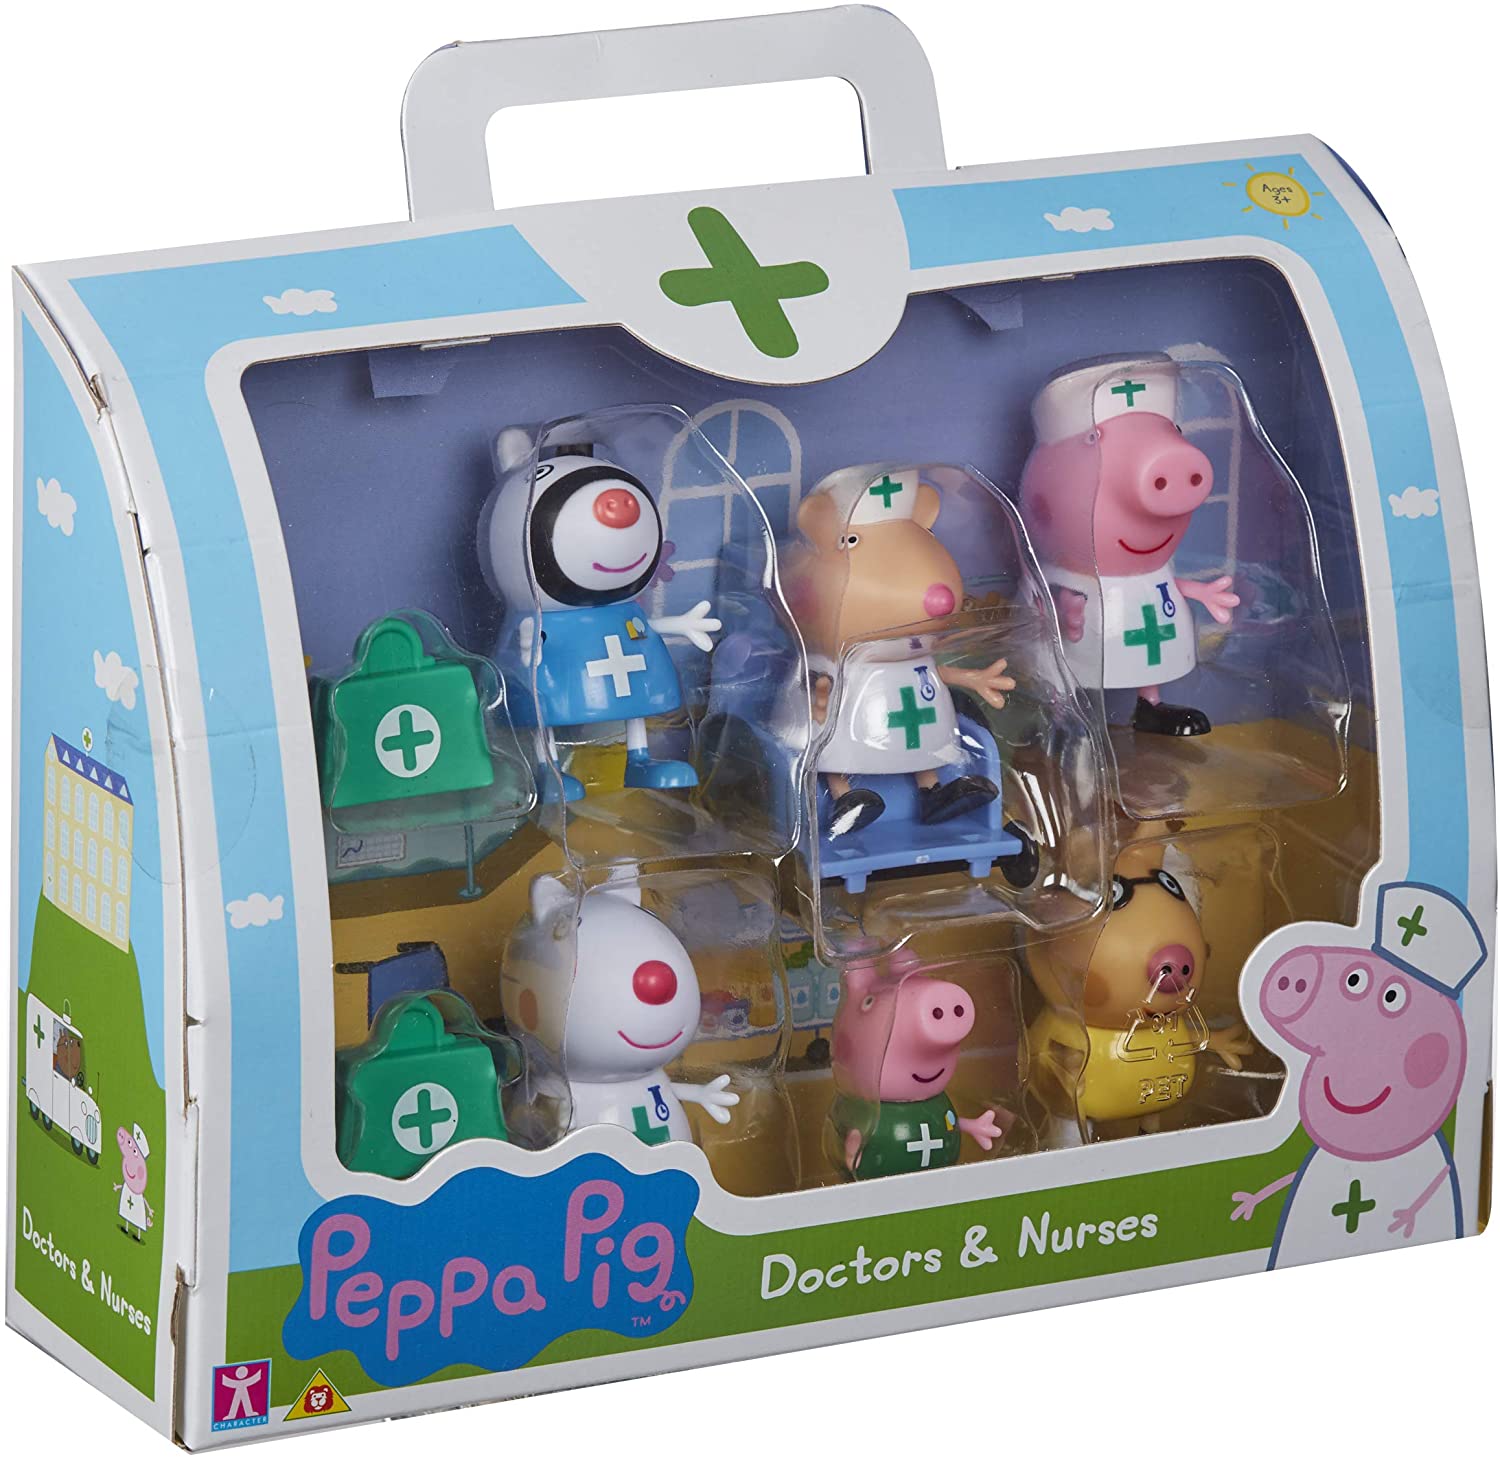 Peppa Pig Doctors & Nurses Figure Pack